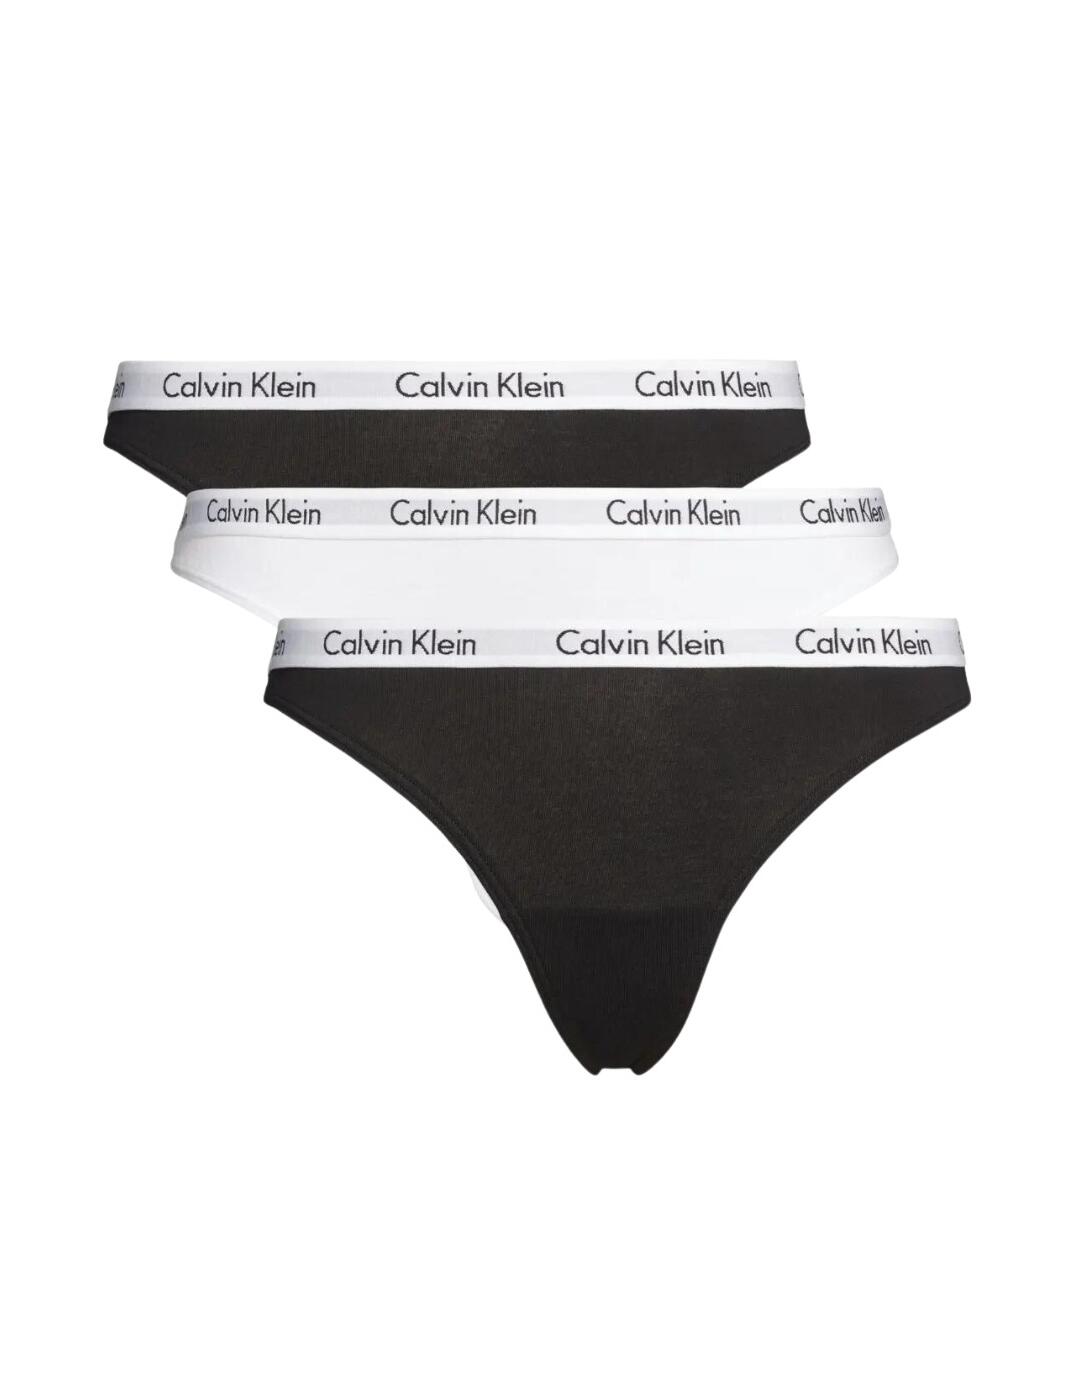 000QD3587E Calvin Klein Carousel Thong 3 Pack - QD3587E Black/White/Black